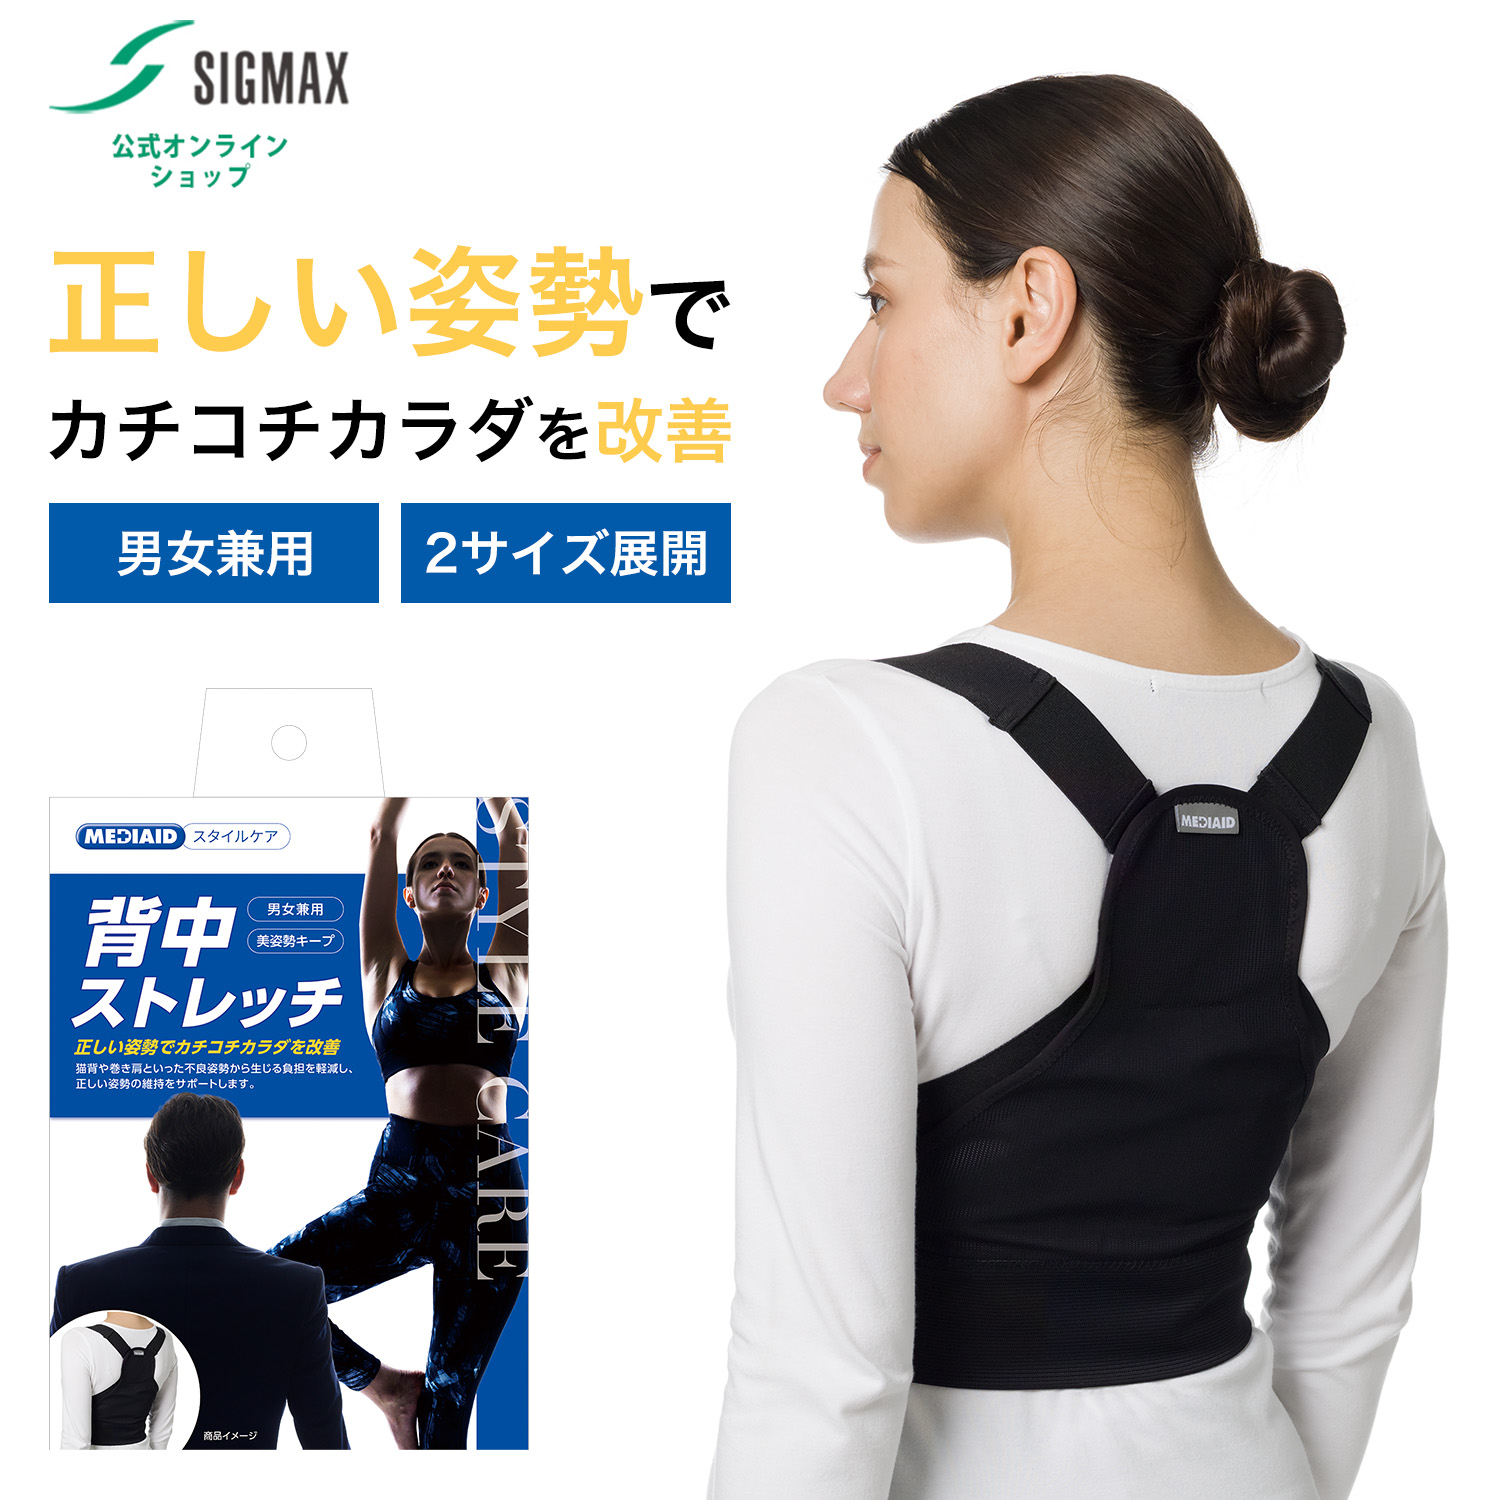 日本産】 maxbelt R2シリーズ 腰痛対策ベルト Sサイズ 医療用 i9tmg.com.br